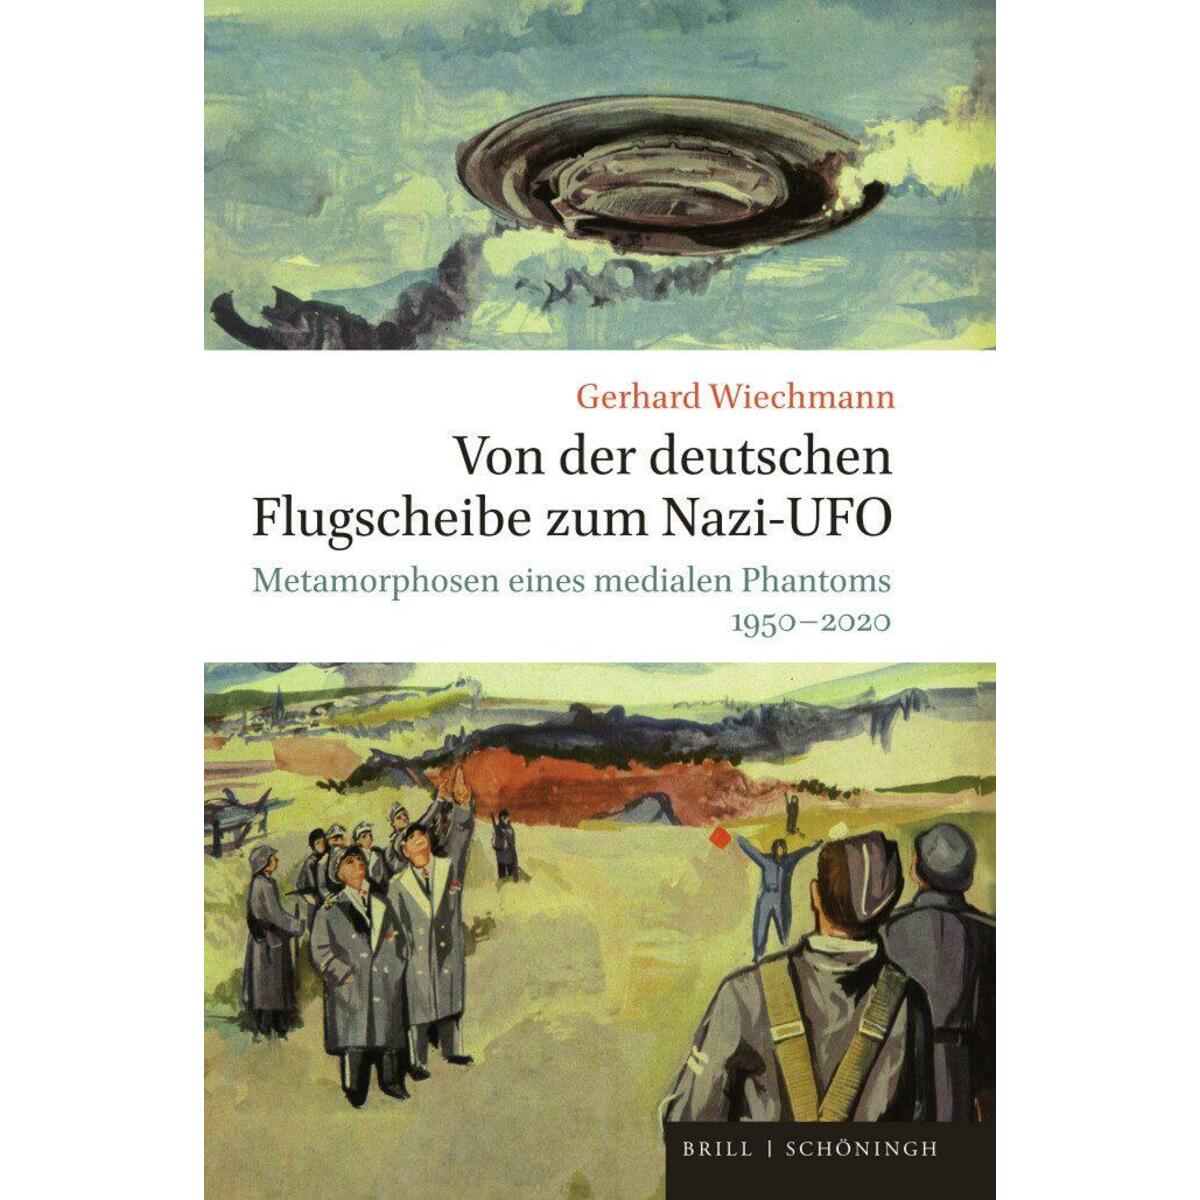 Von der deutschen Flugscheibe zum Nazi-UFO von Brill I  Schoeningh